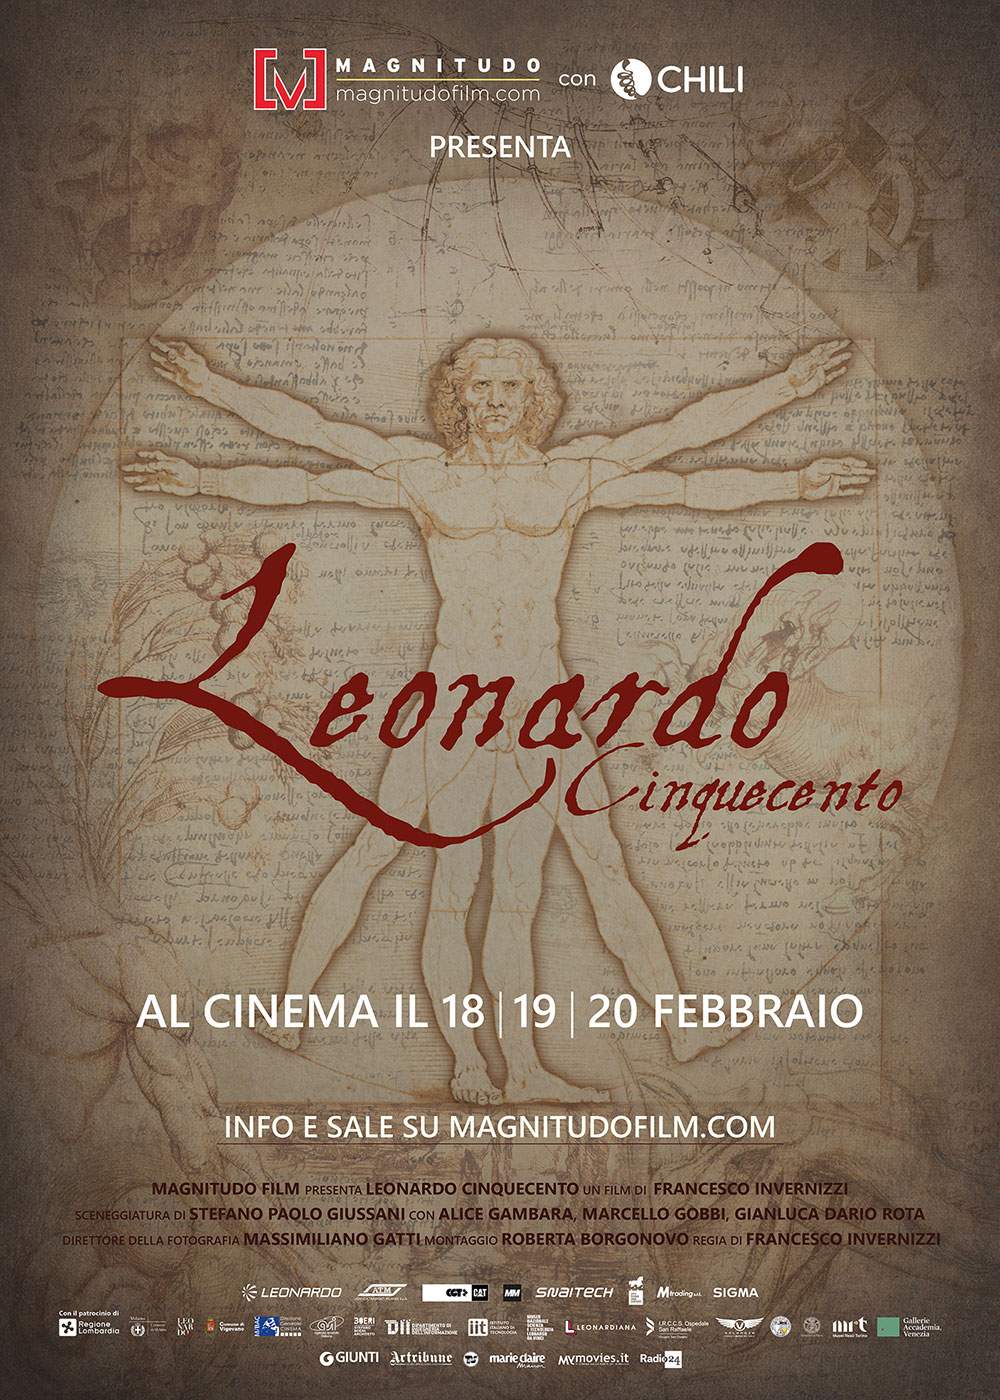 Larte at the cinema celebrates Leonardo da Vinci